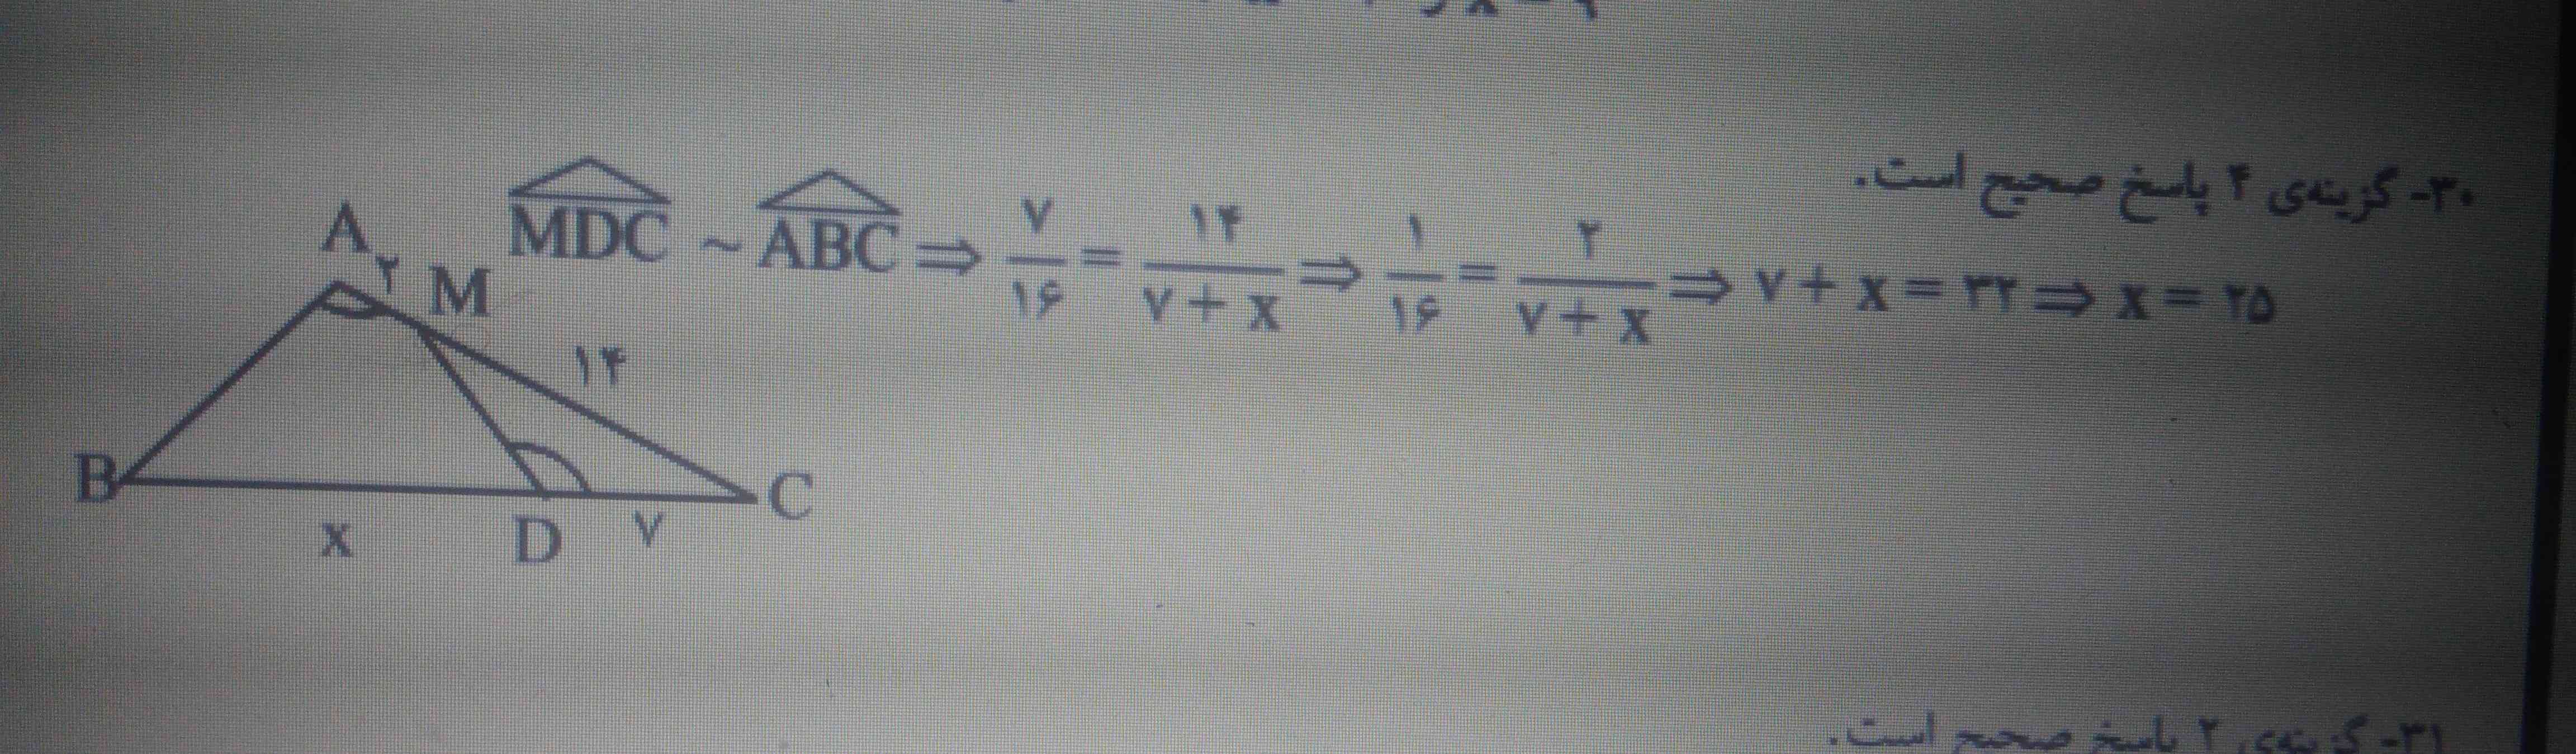 در شکل مقابل A=D می باشد طول BD چند واحد است؟
1)22
2)23
3)24
4)25

جواب رو تو عکس گذاشتم از راه قضیه تالس هست 
فقط نفهمیدم چجوری حل شده لطفا یه نفر بگه سریعتر 😢❤️